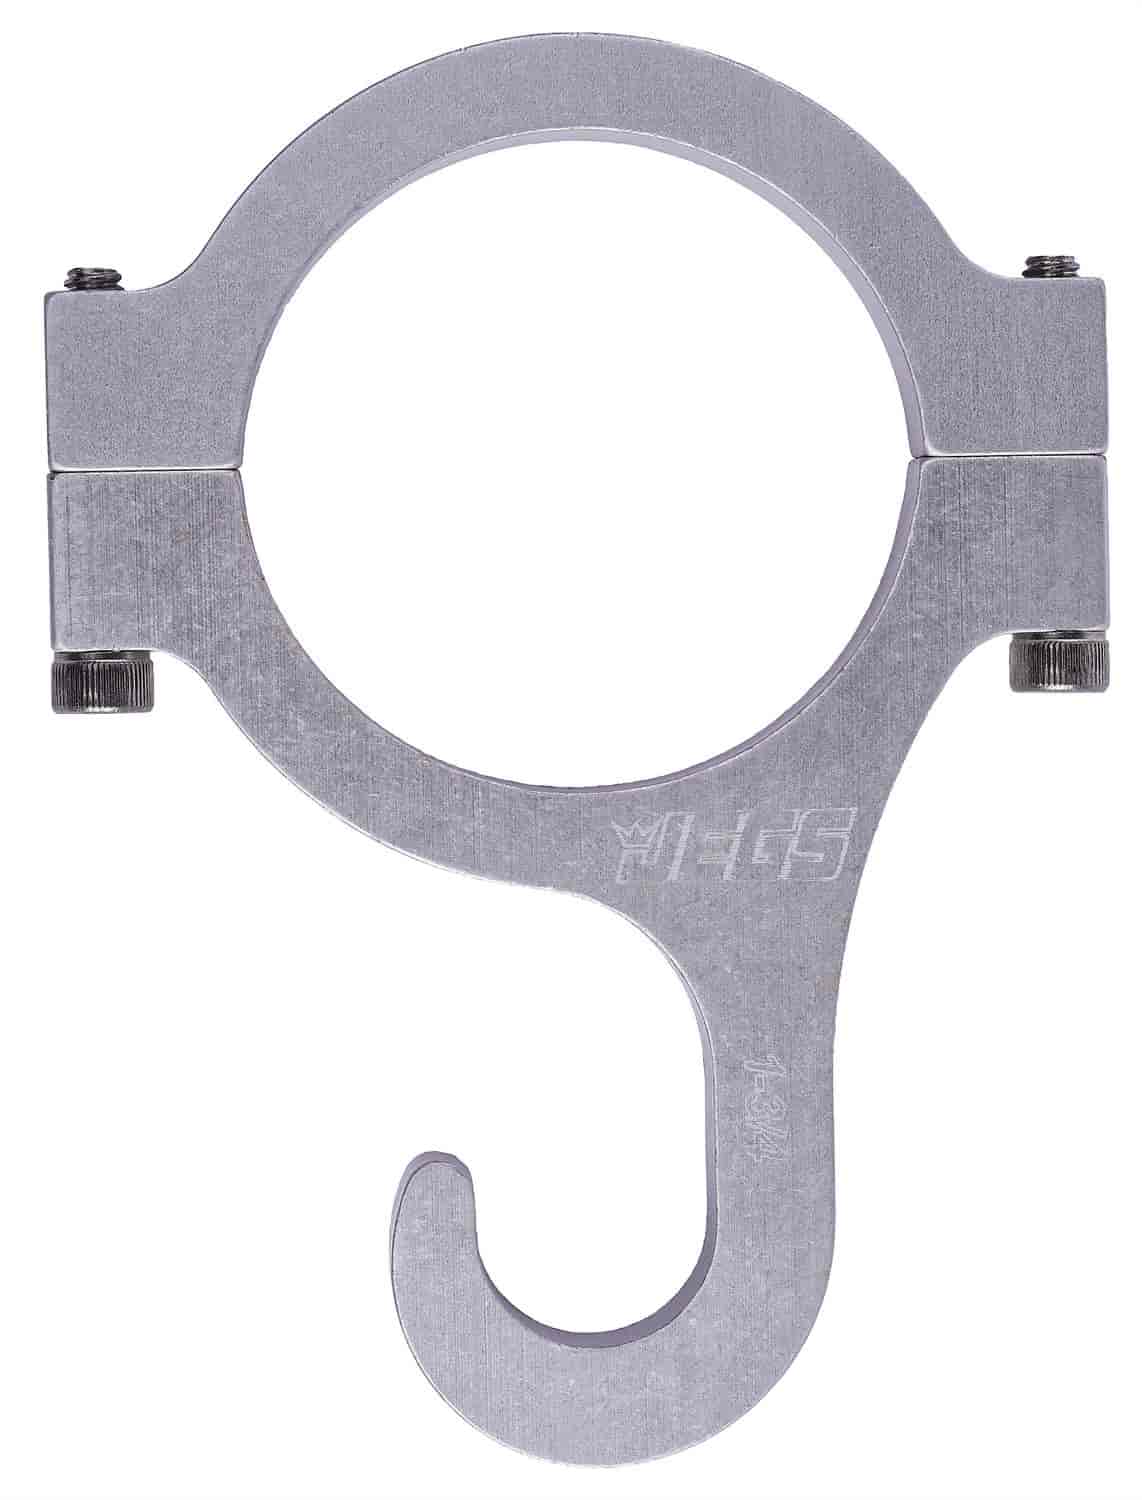 Billet Aluminum Roll Bar Mount Helmet Hook Fits 1-3/4" Diameter Roll Bars